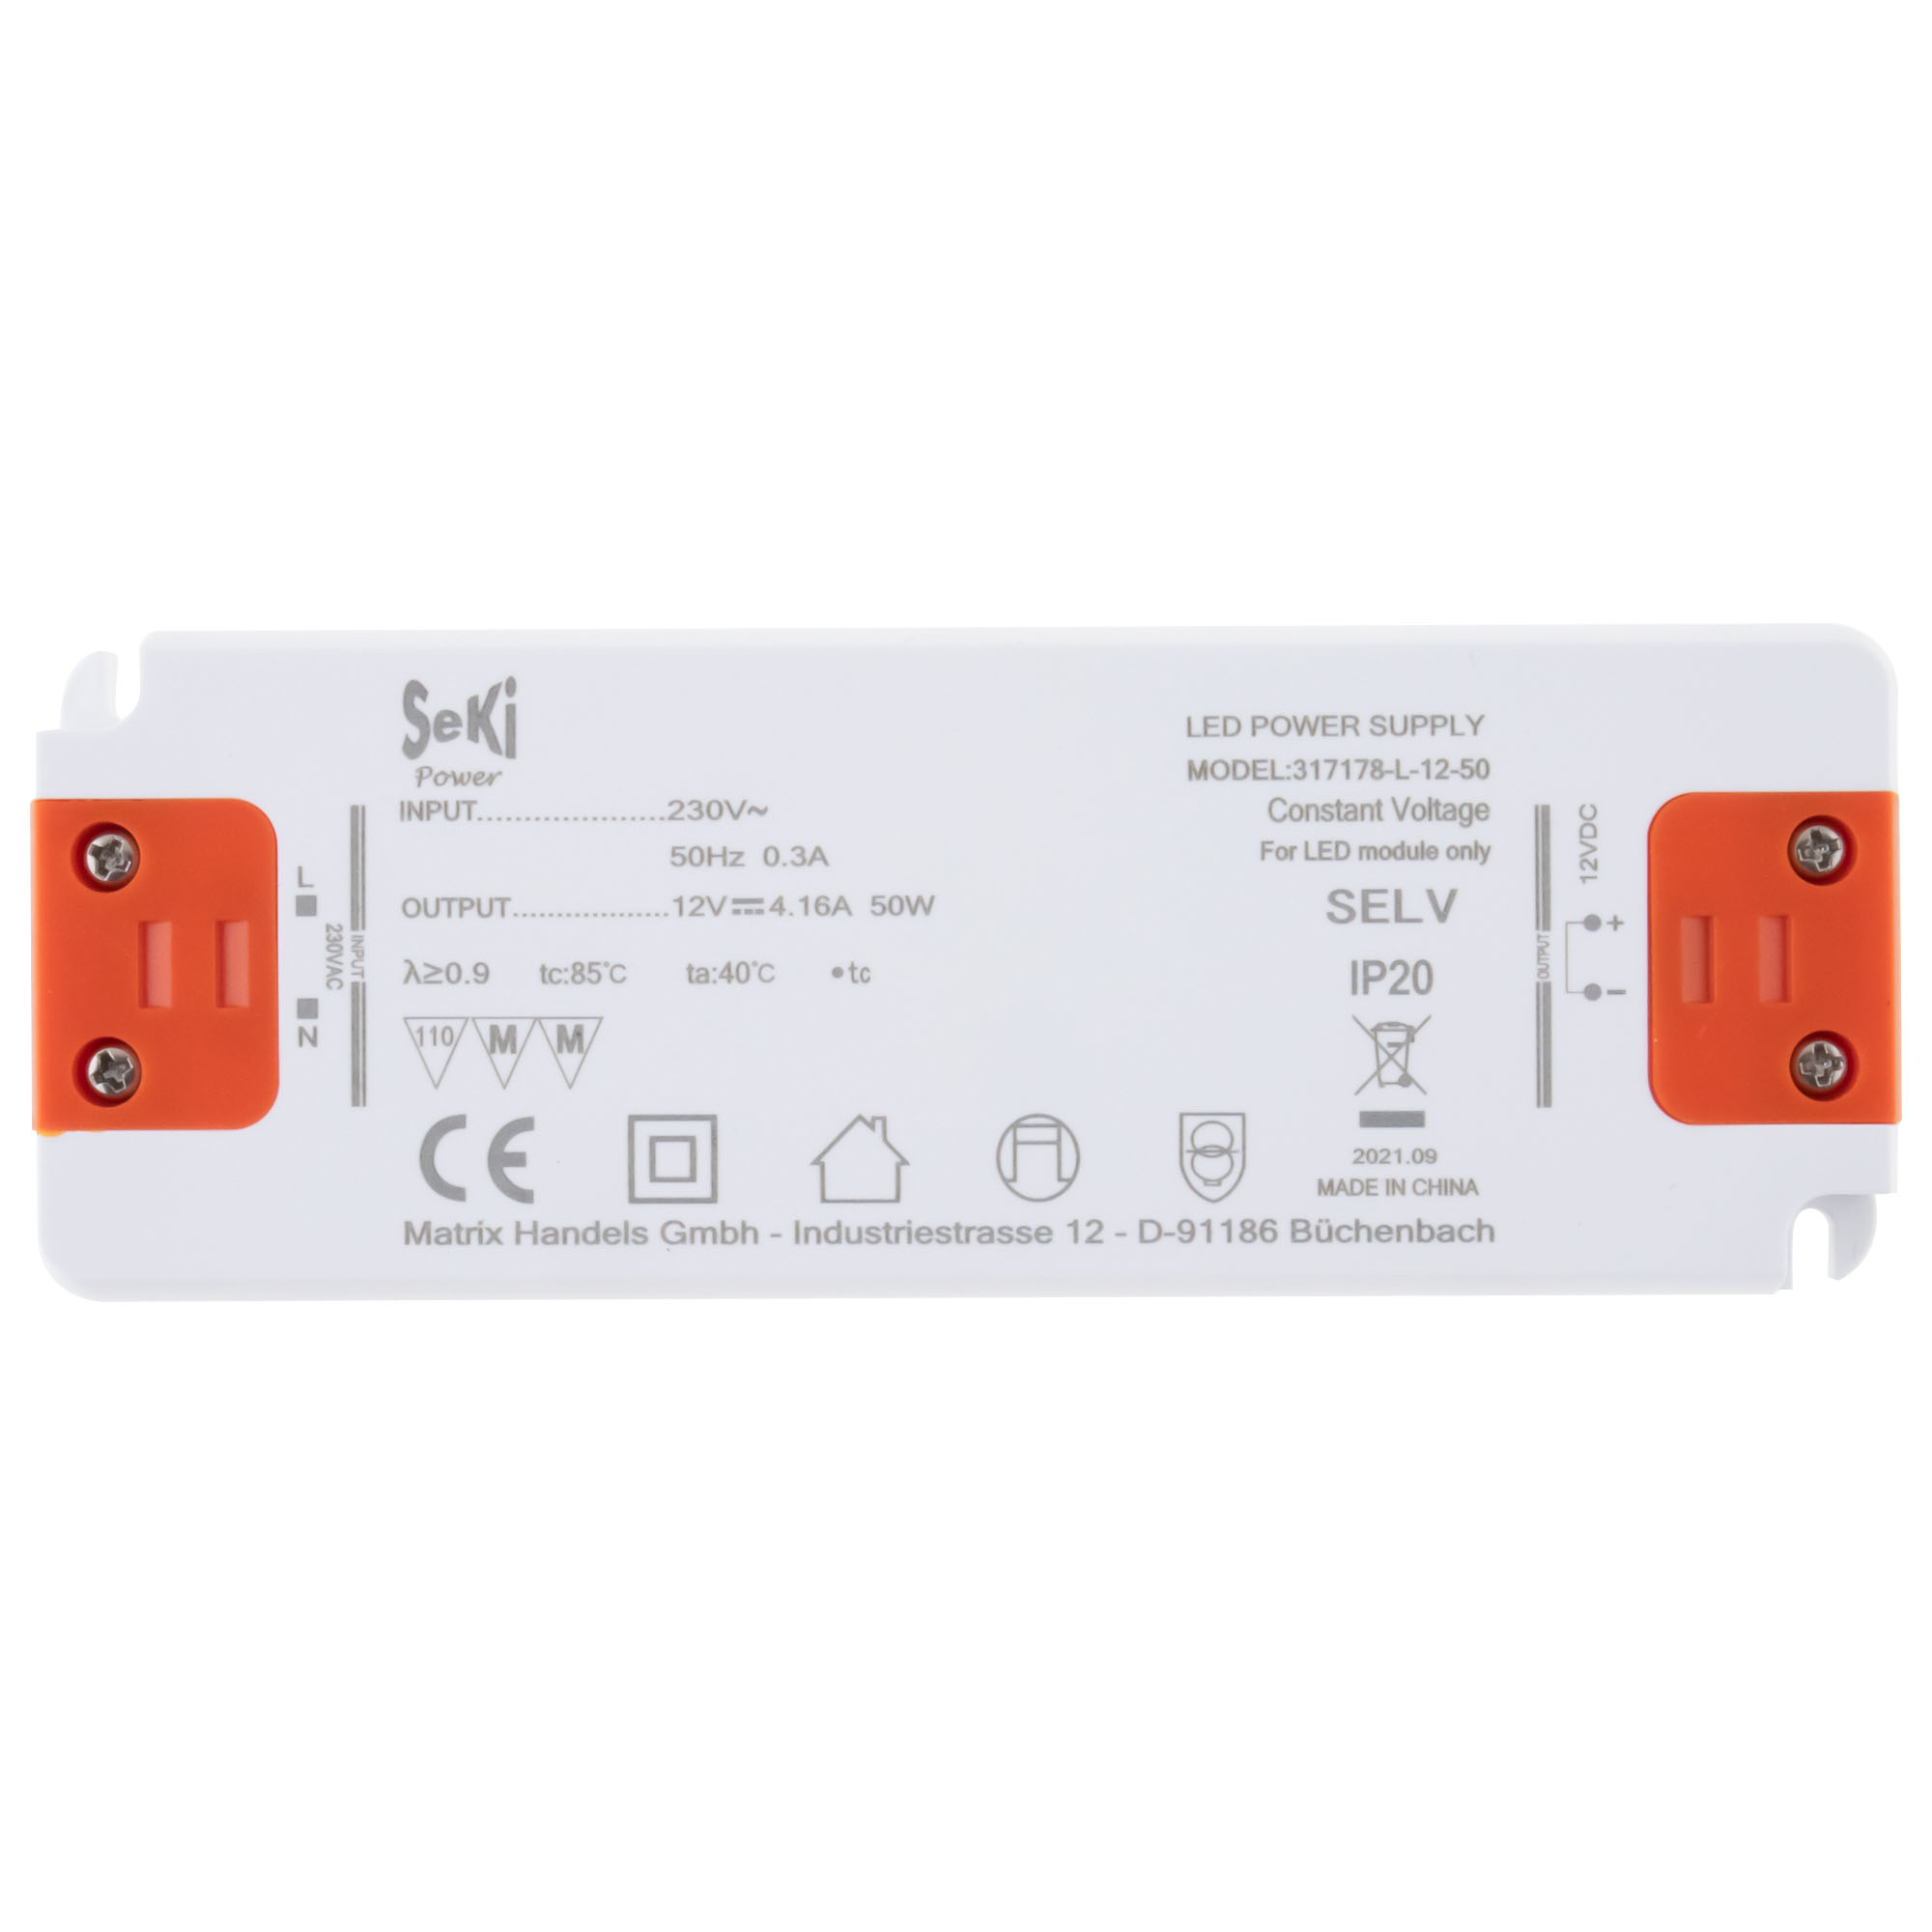 LED power supply L-12-50 - 12V - 4.16A - 50W